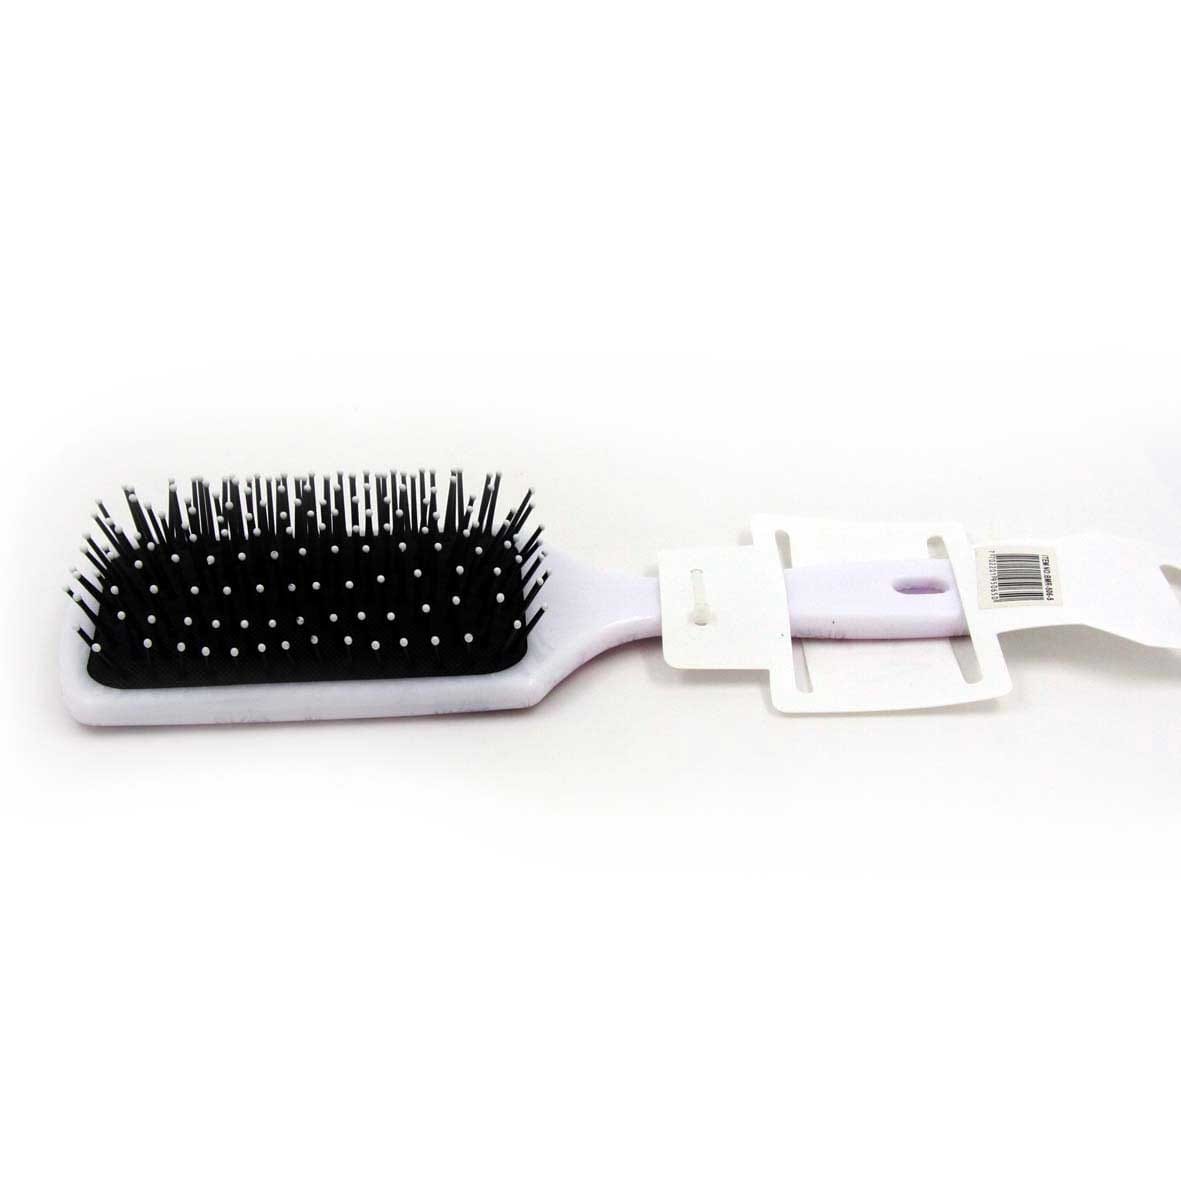 Cepillo Plano Para El Cabello ayudan a desenredar el cabello más fácil y suave